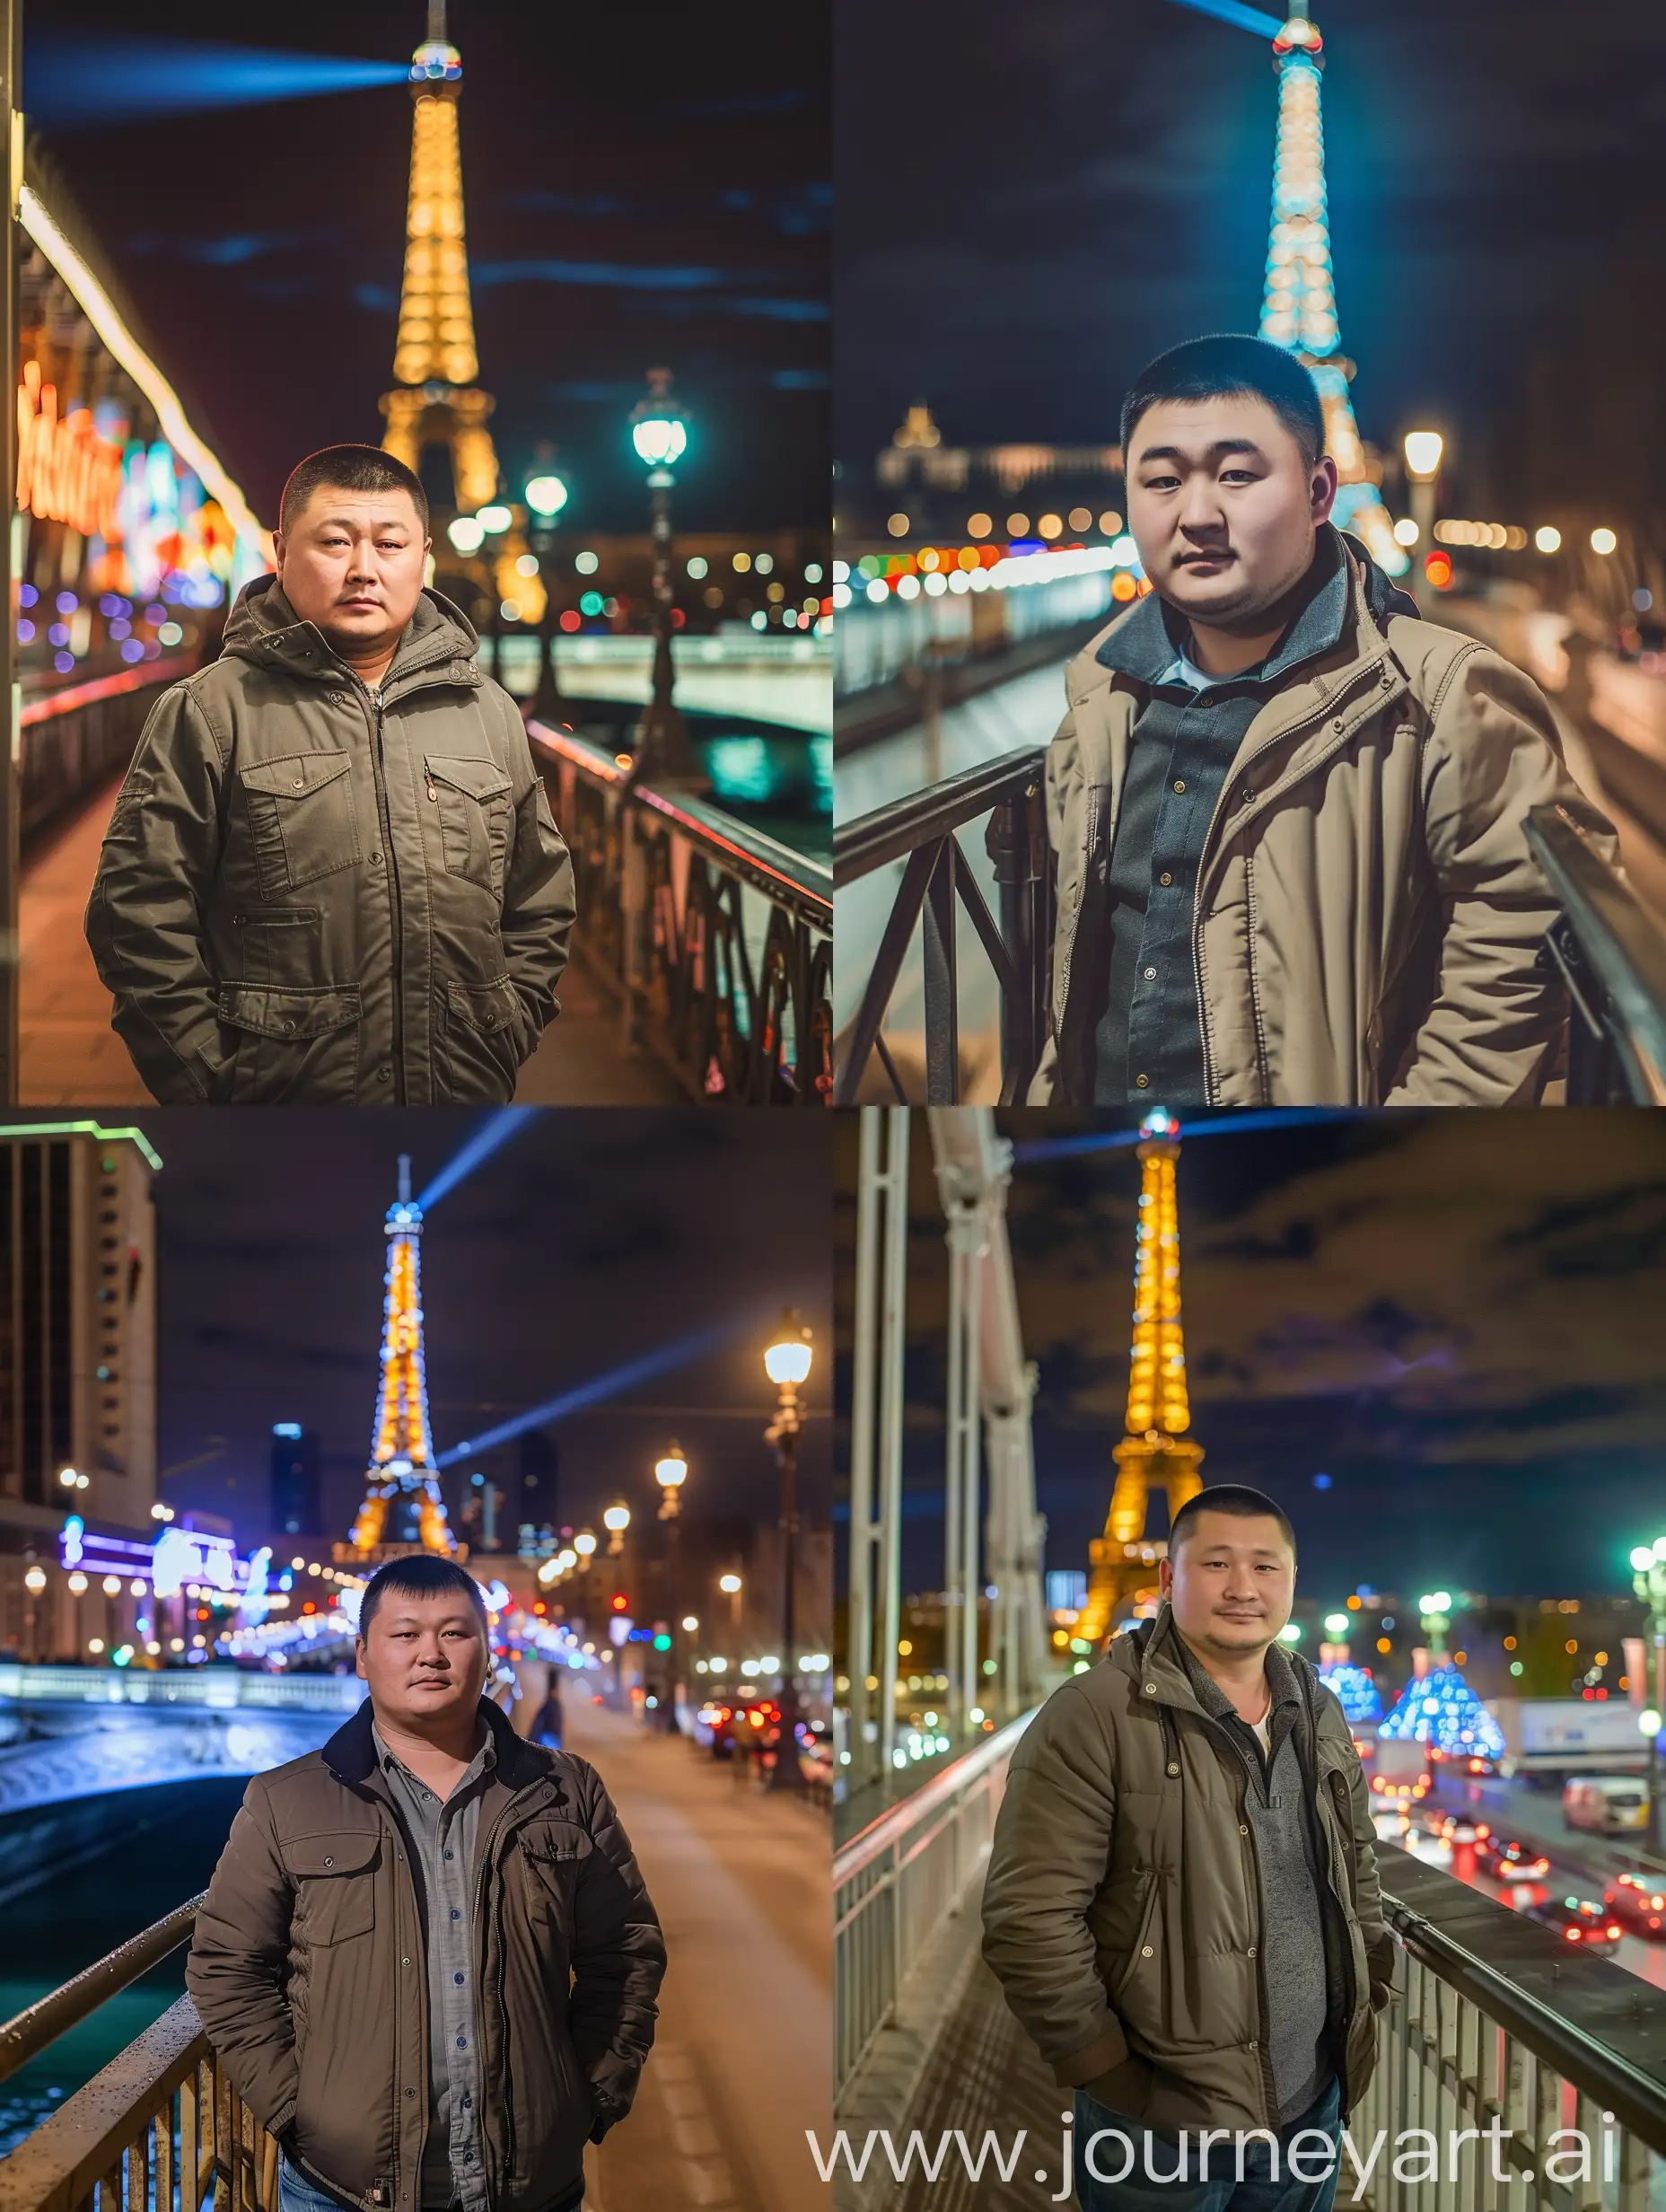 Russian-Man-in-Trucker-Jacket-on-Bridge-with-Eiffel-Tower-Lights